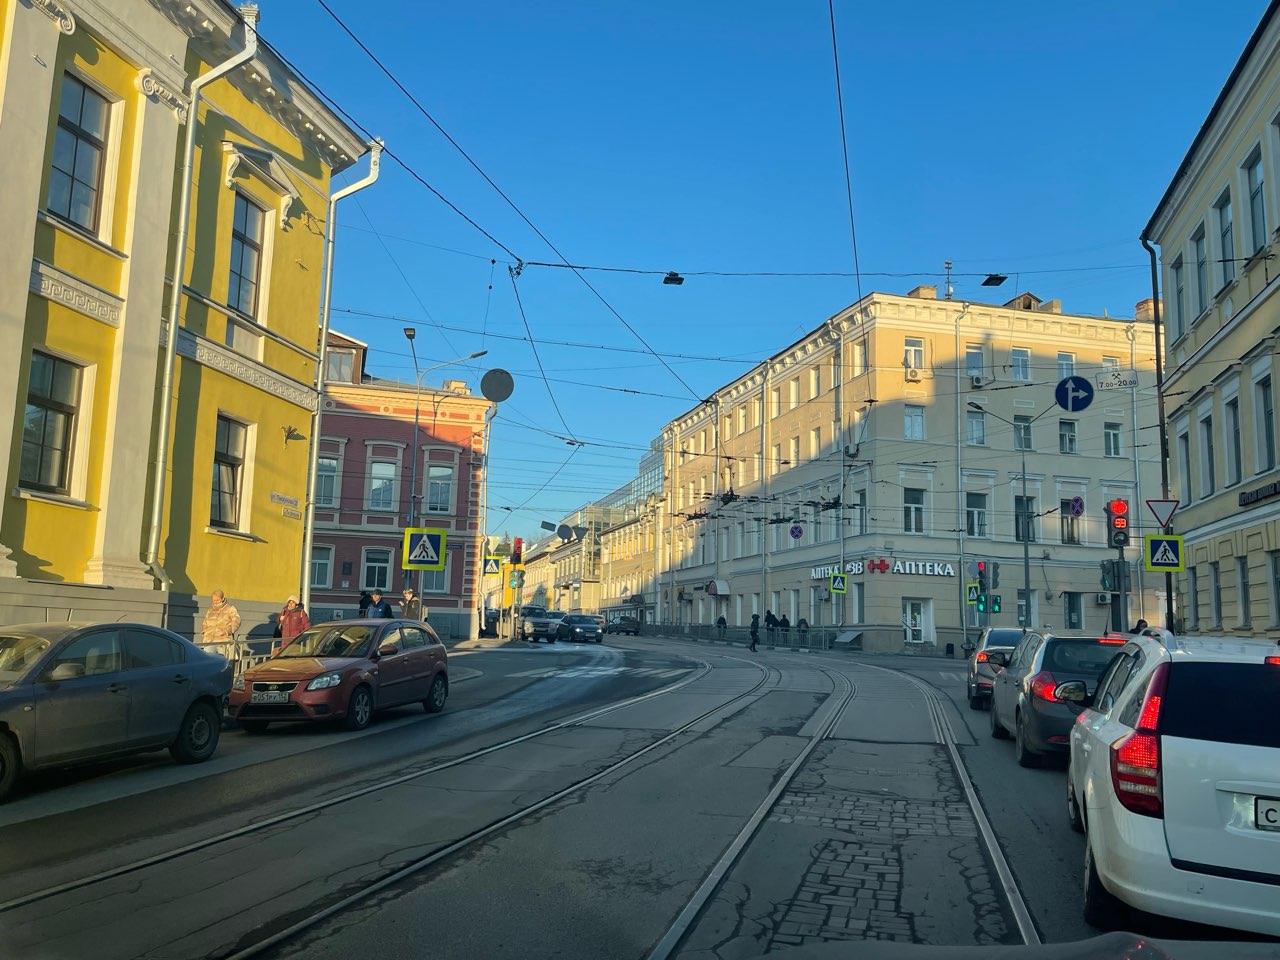 Автомобилистам запретят проезд по трамвайным путям на восьми участках в Нижнем Новгороде - фото 1